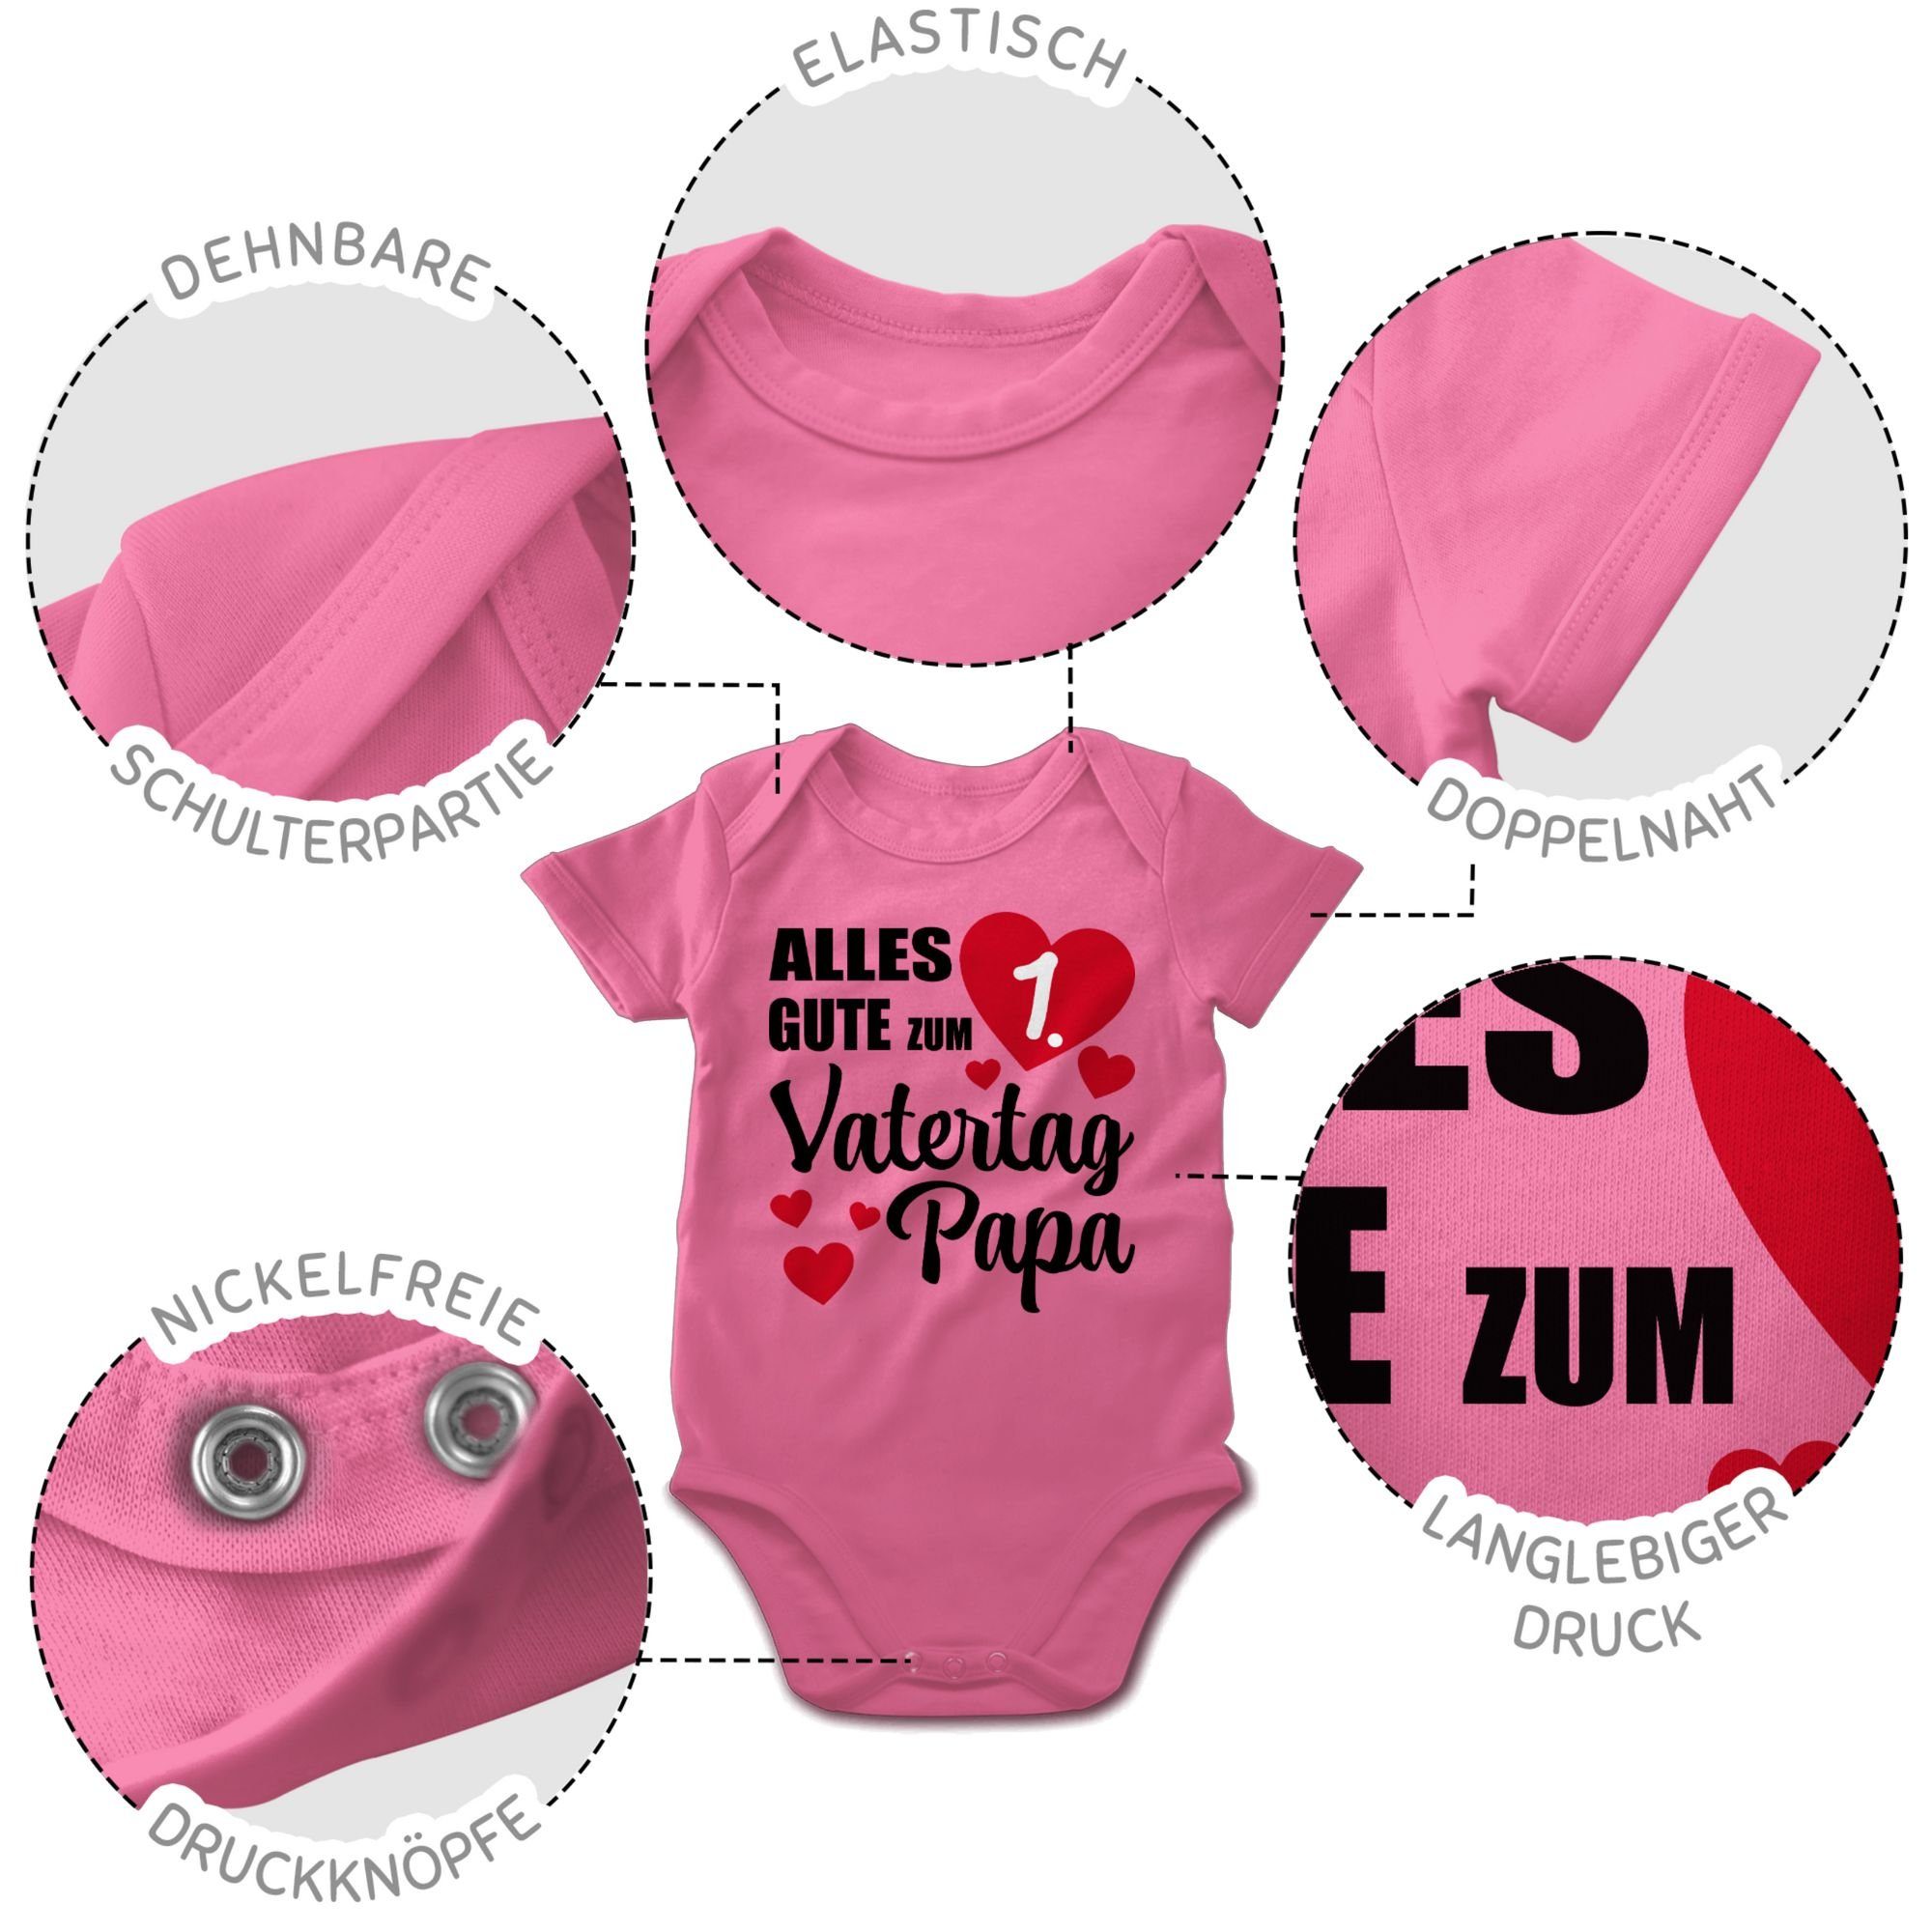 Shirtracer Shirtbody 1. - Vatertag ersten Papa gute Vatertag Pink Alles Baby Geschenk 3 Vatertag zum